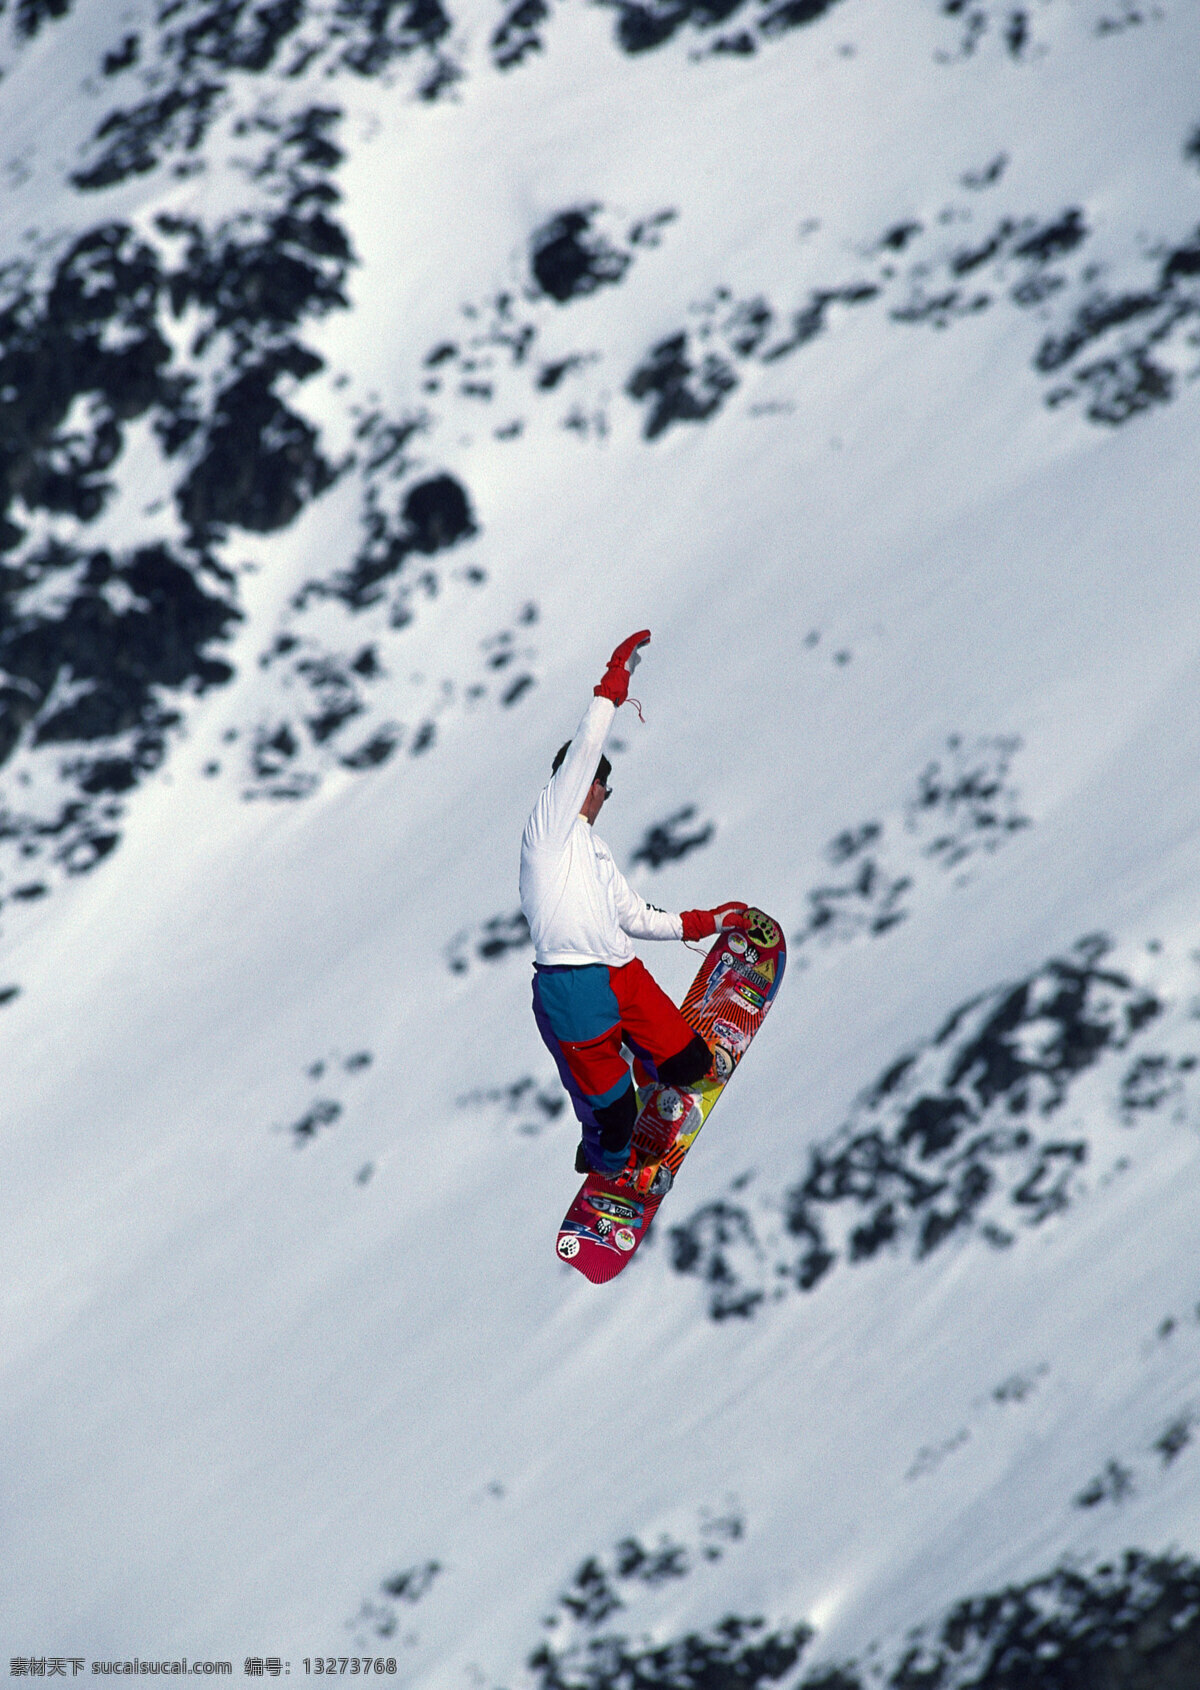 极限运动 雪山免费下载 滑雪 滑雪人物 雪山 雪山风景图 滑雪人物图片 滑雪手套 滑雪装备 极限运功